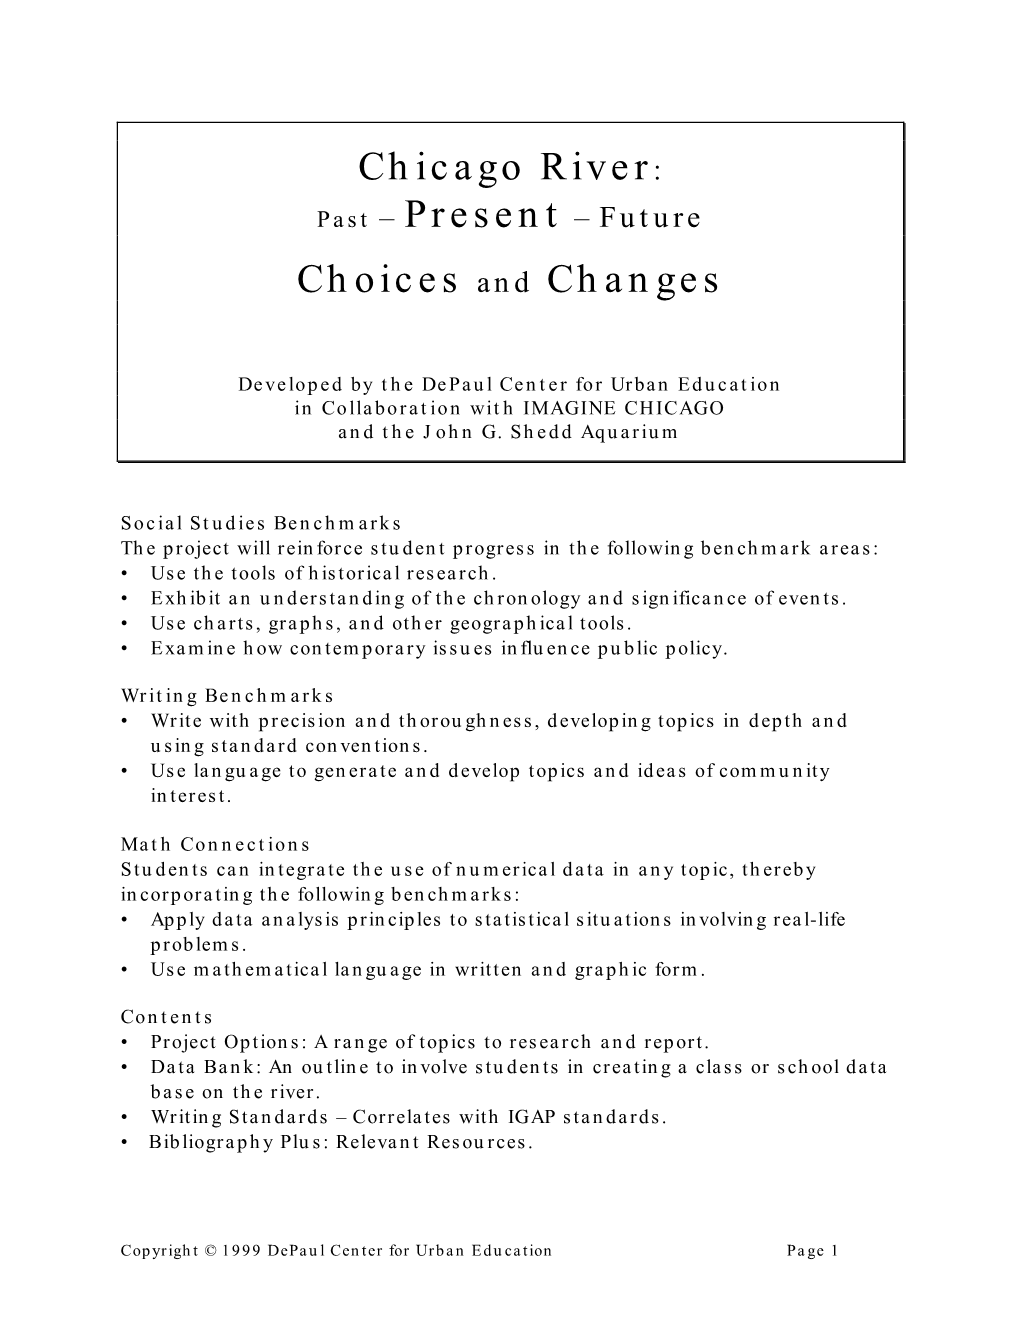 Chicago River: Past – Present – Future